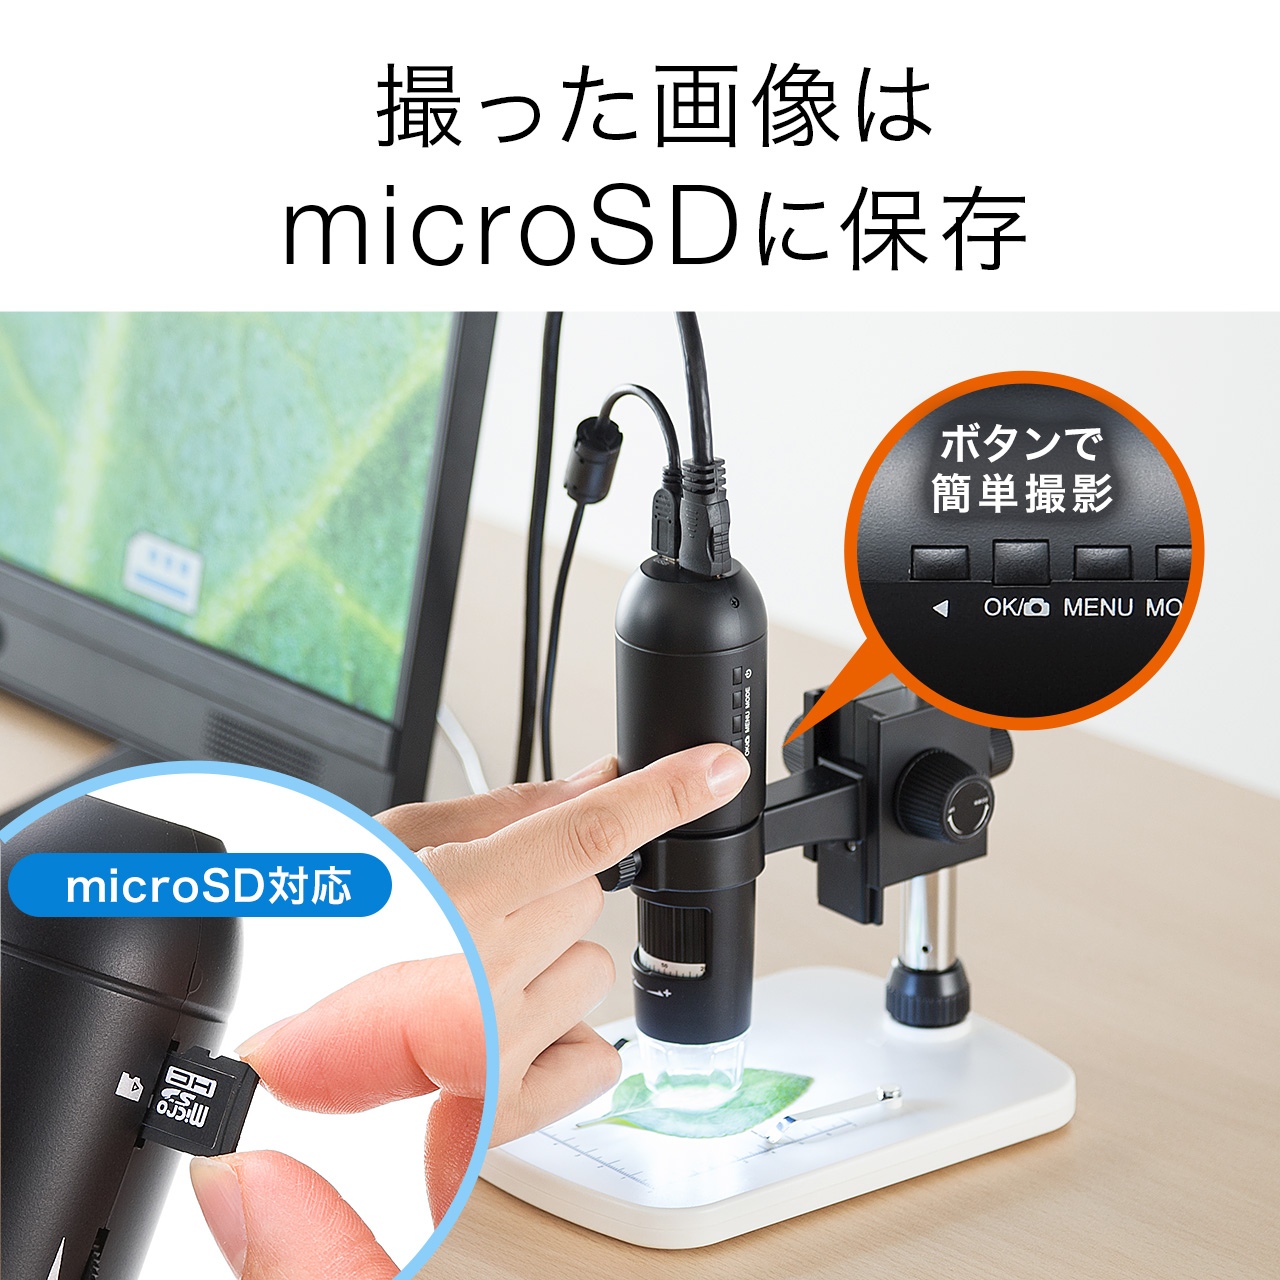 デジタル顕微鏡 マイクロスコープ HDMI出力対応 最大220倍 スタンド